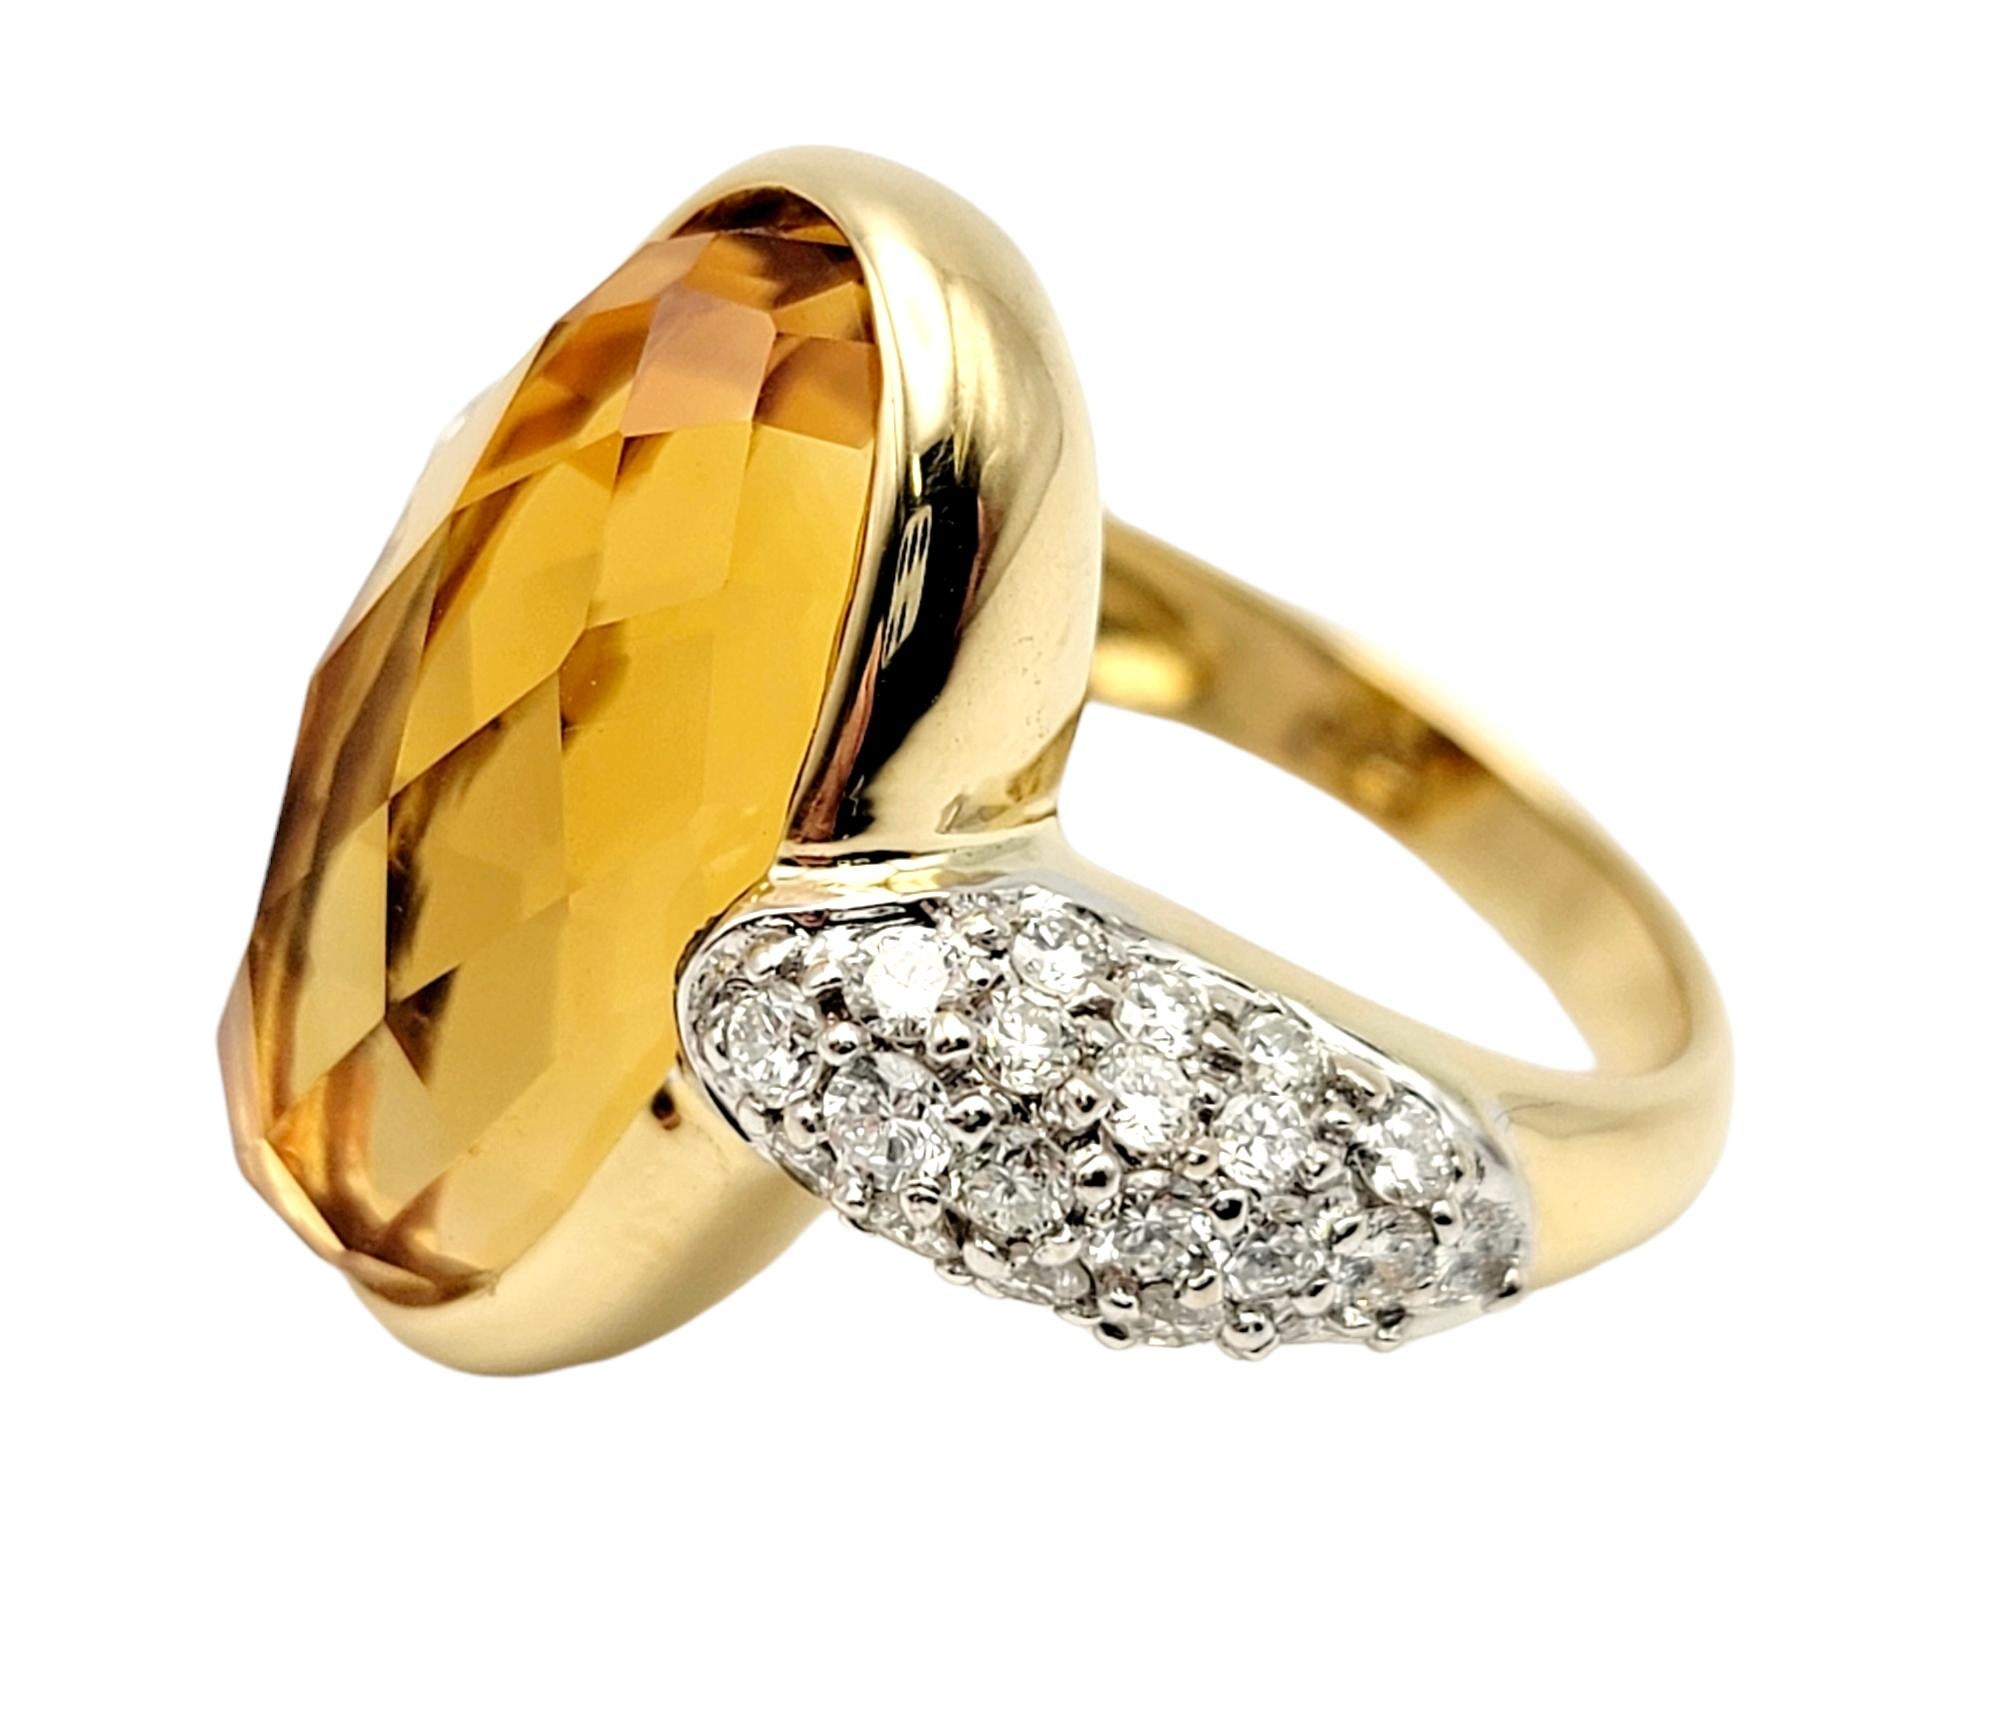 Taille de l'anneau : 5

La magnifique et unique bague en citrine et diamant taille fantaisie flatte et allonge le doigt tandis que les pierres étincelantes brillent sur la monture en or jaune chaud.  

Taille de l'anneau : 5
Métal : Or jaune 18